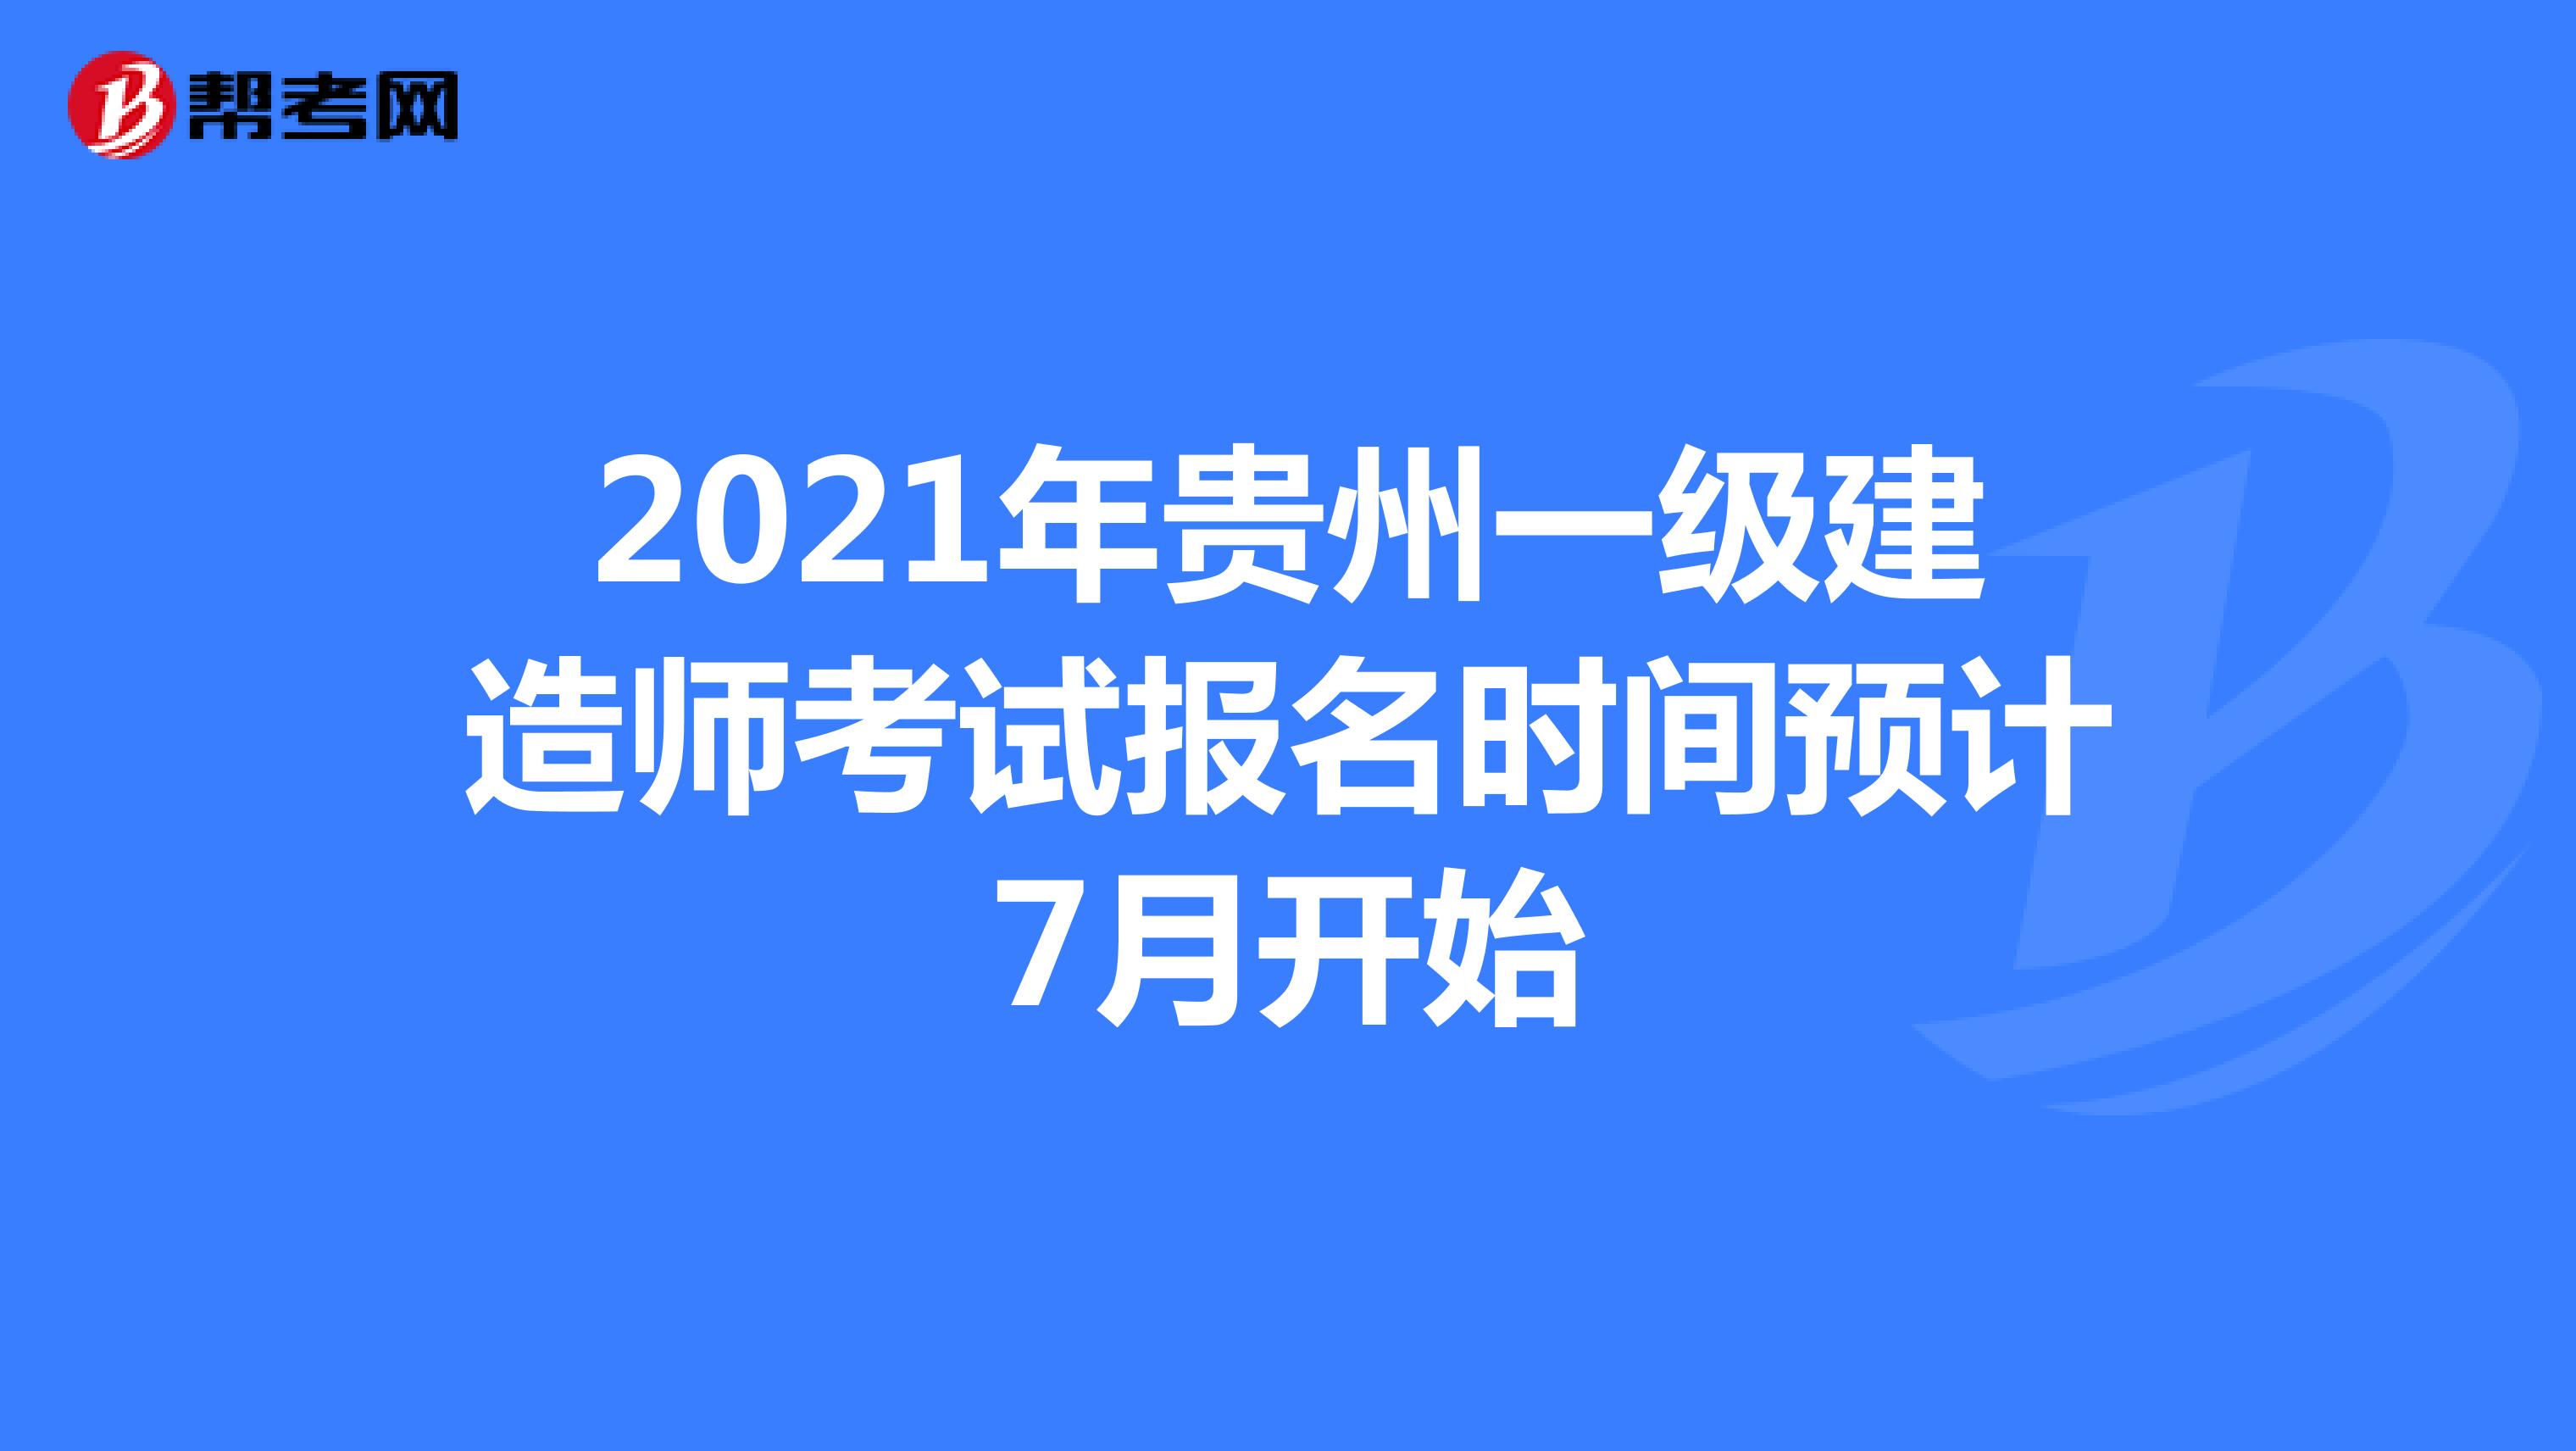 2021年贵州一级建造师考试报名时间预计7月开始